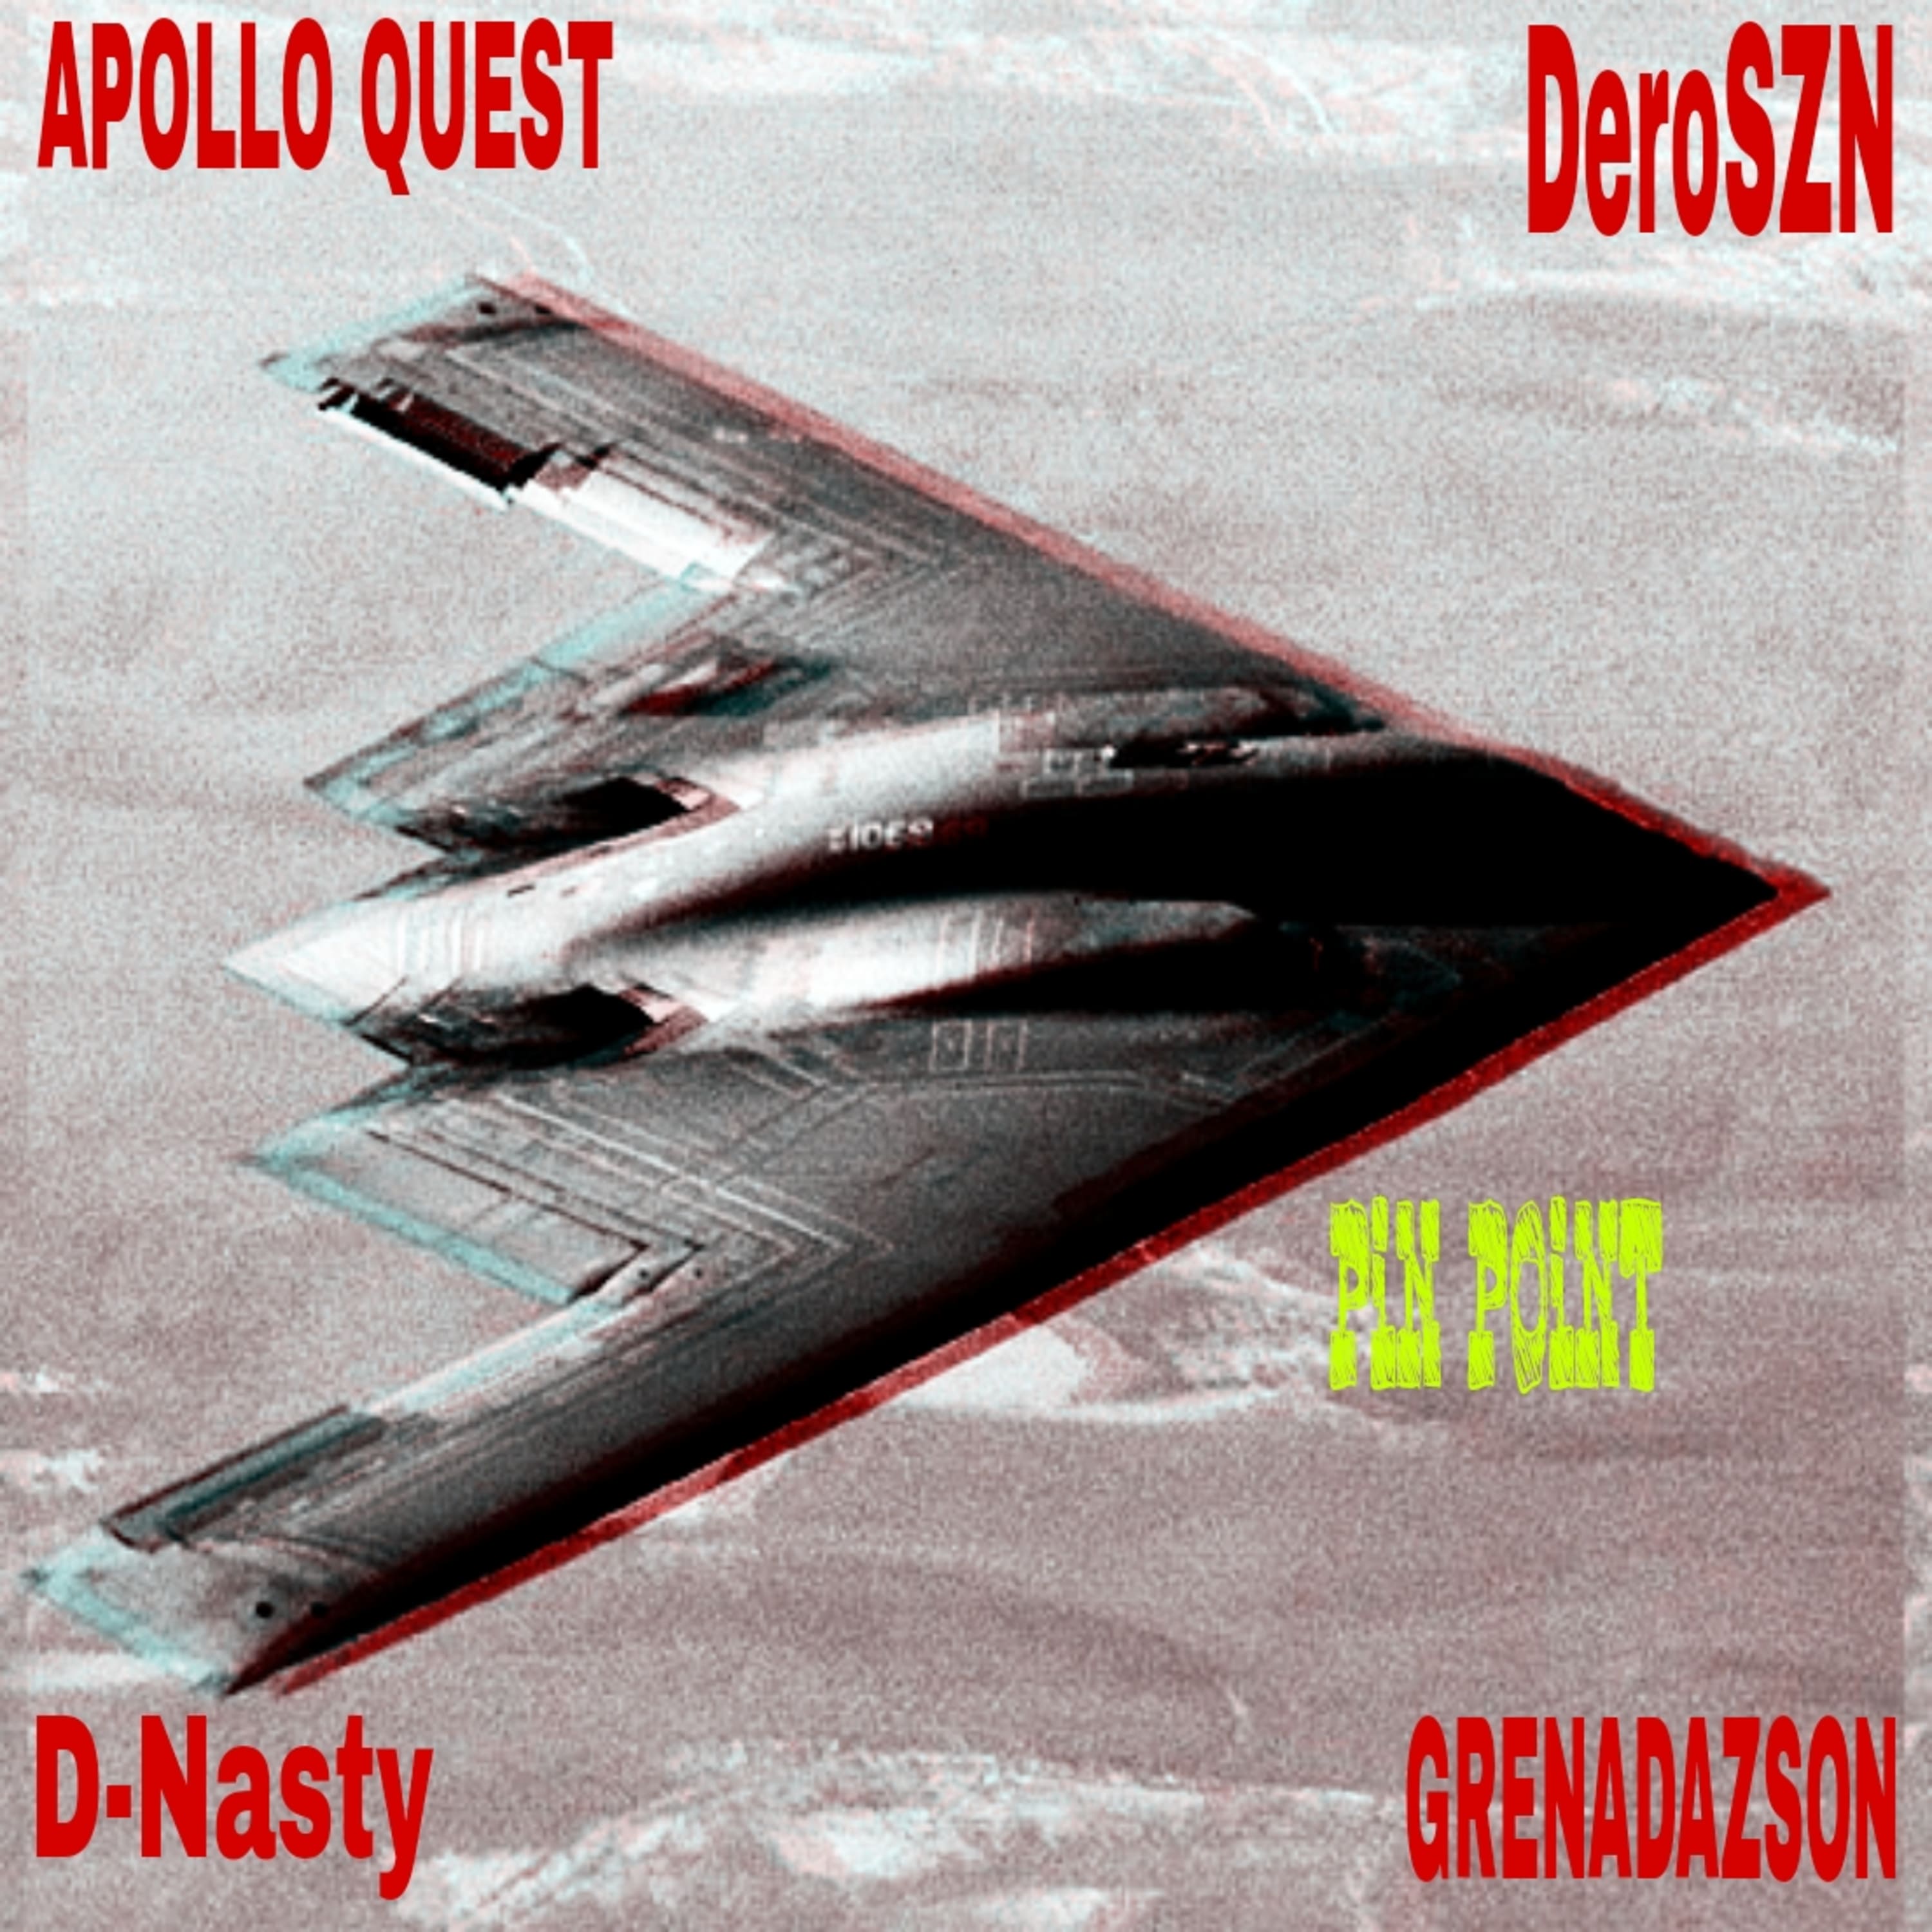 GRENADAZSON x Apollo Quest x D-Nasty The Masta x DeroSZN – “Pin Point”